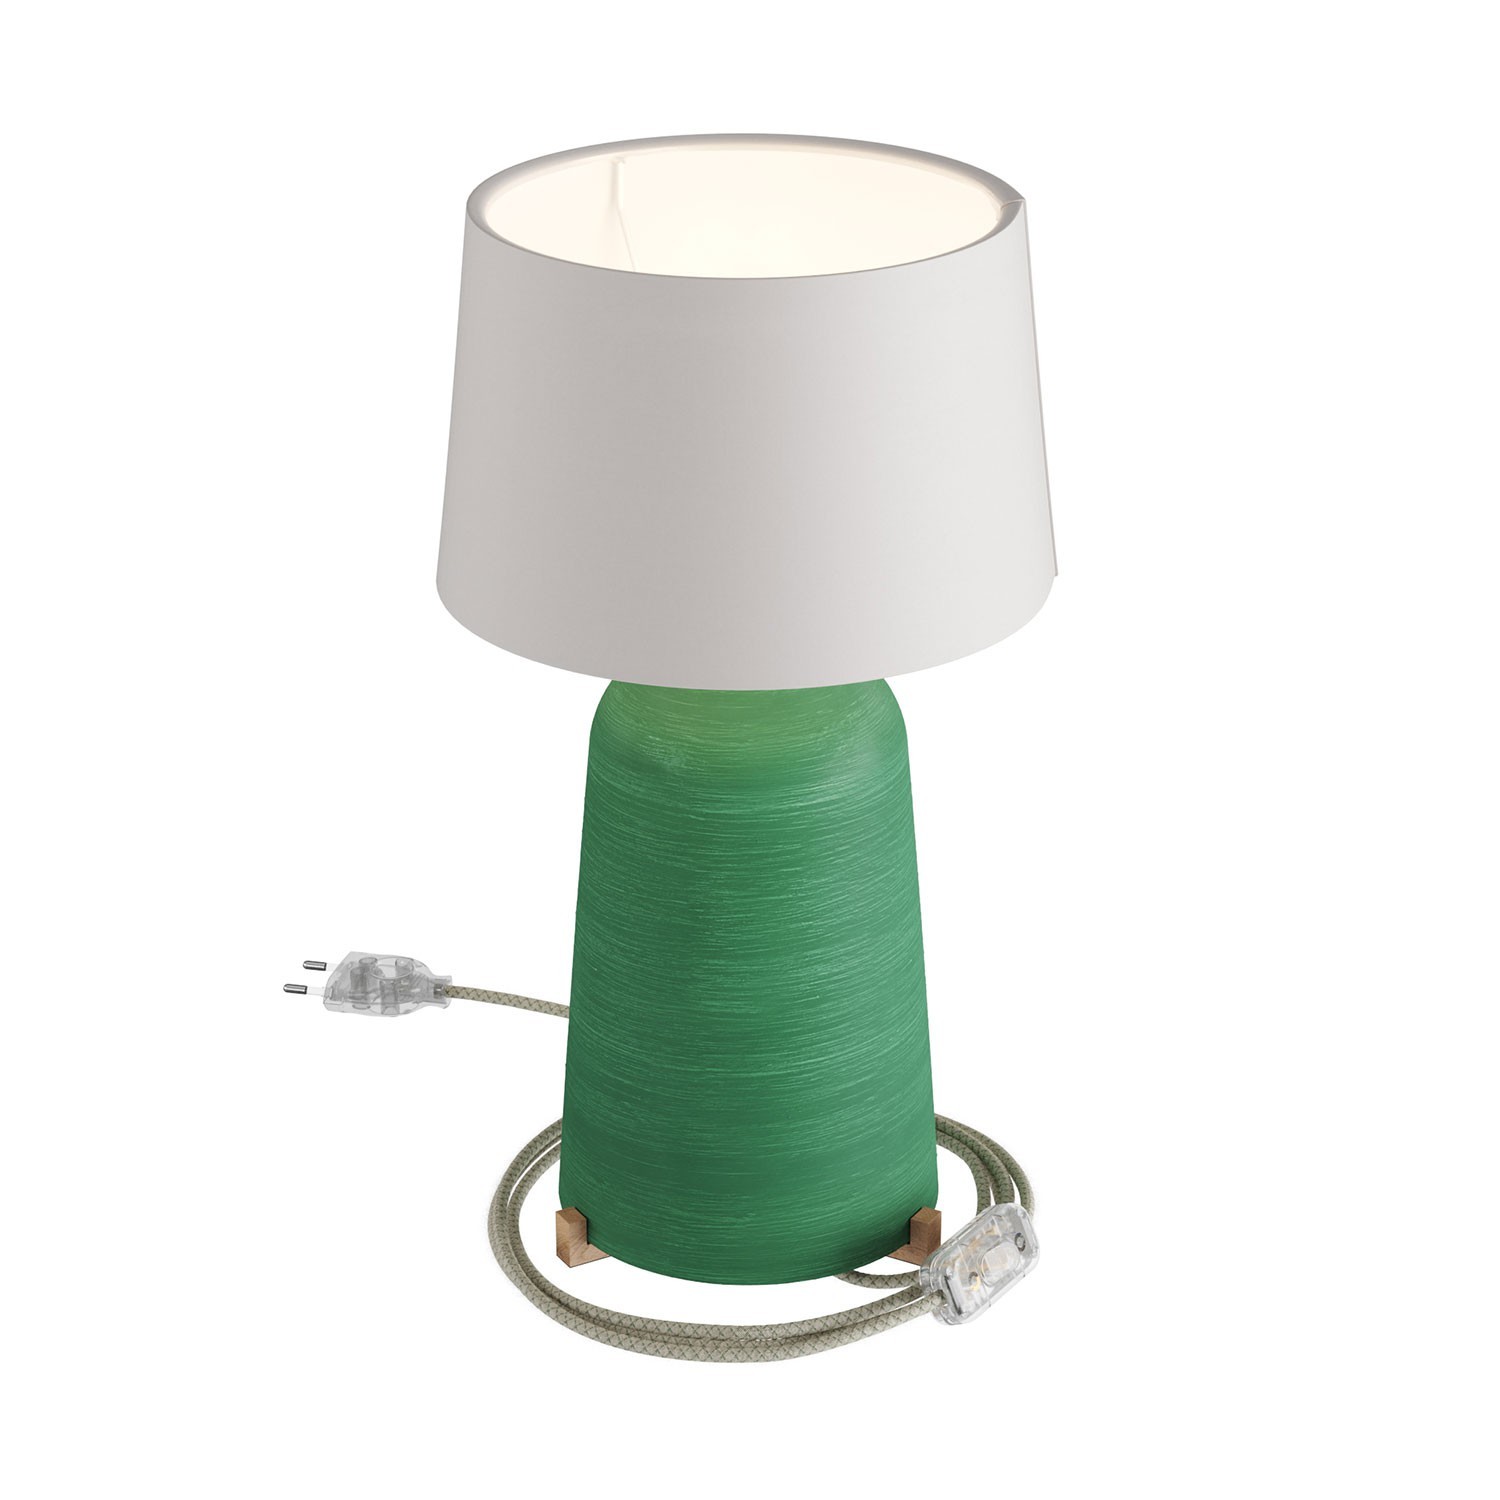 Lámpara de sobremesa Bottle de cerámica con pantalla Athena, completa con cable textil, interruptor y clavija de 2 polos